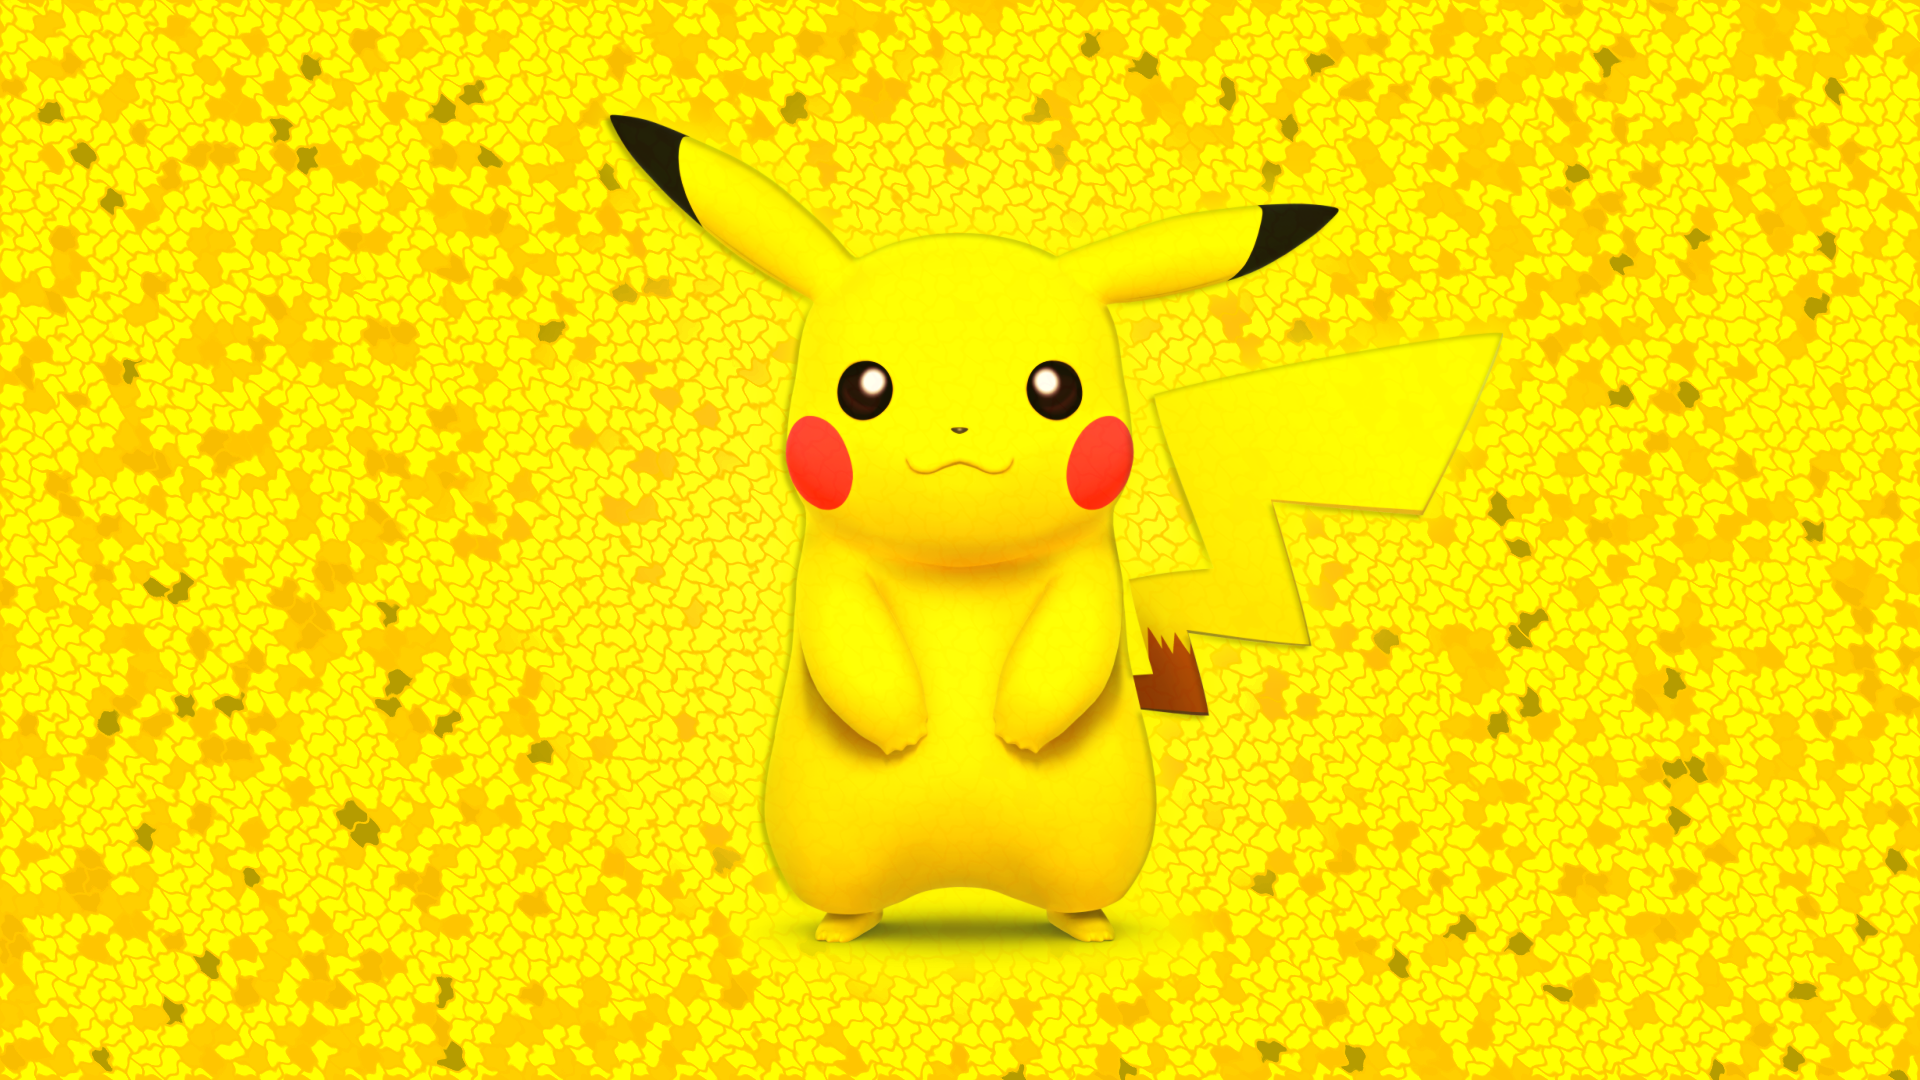 Cute Pikachu Wallpaper Background - Pikachu Pokemon Wallpaper Hd For Iphone , HD Wallpaper & Backgrounds